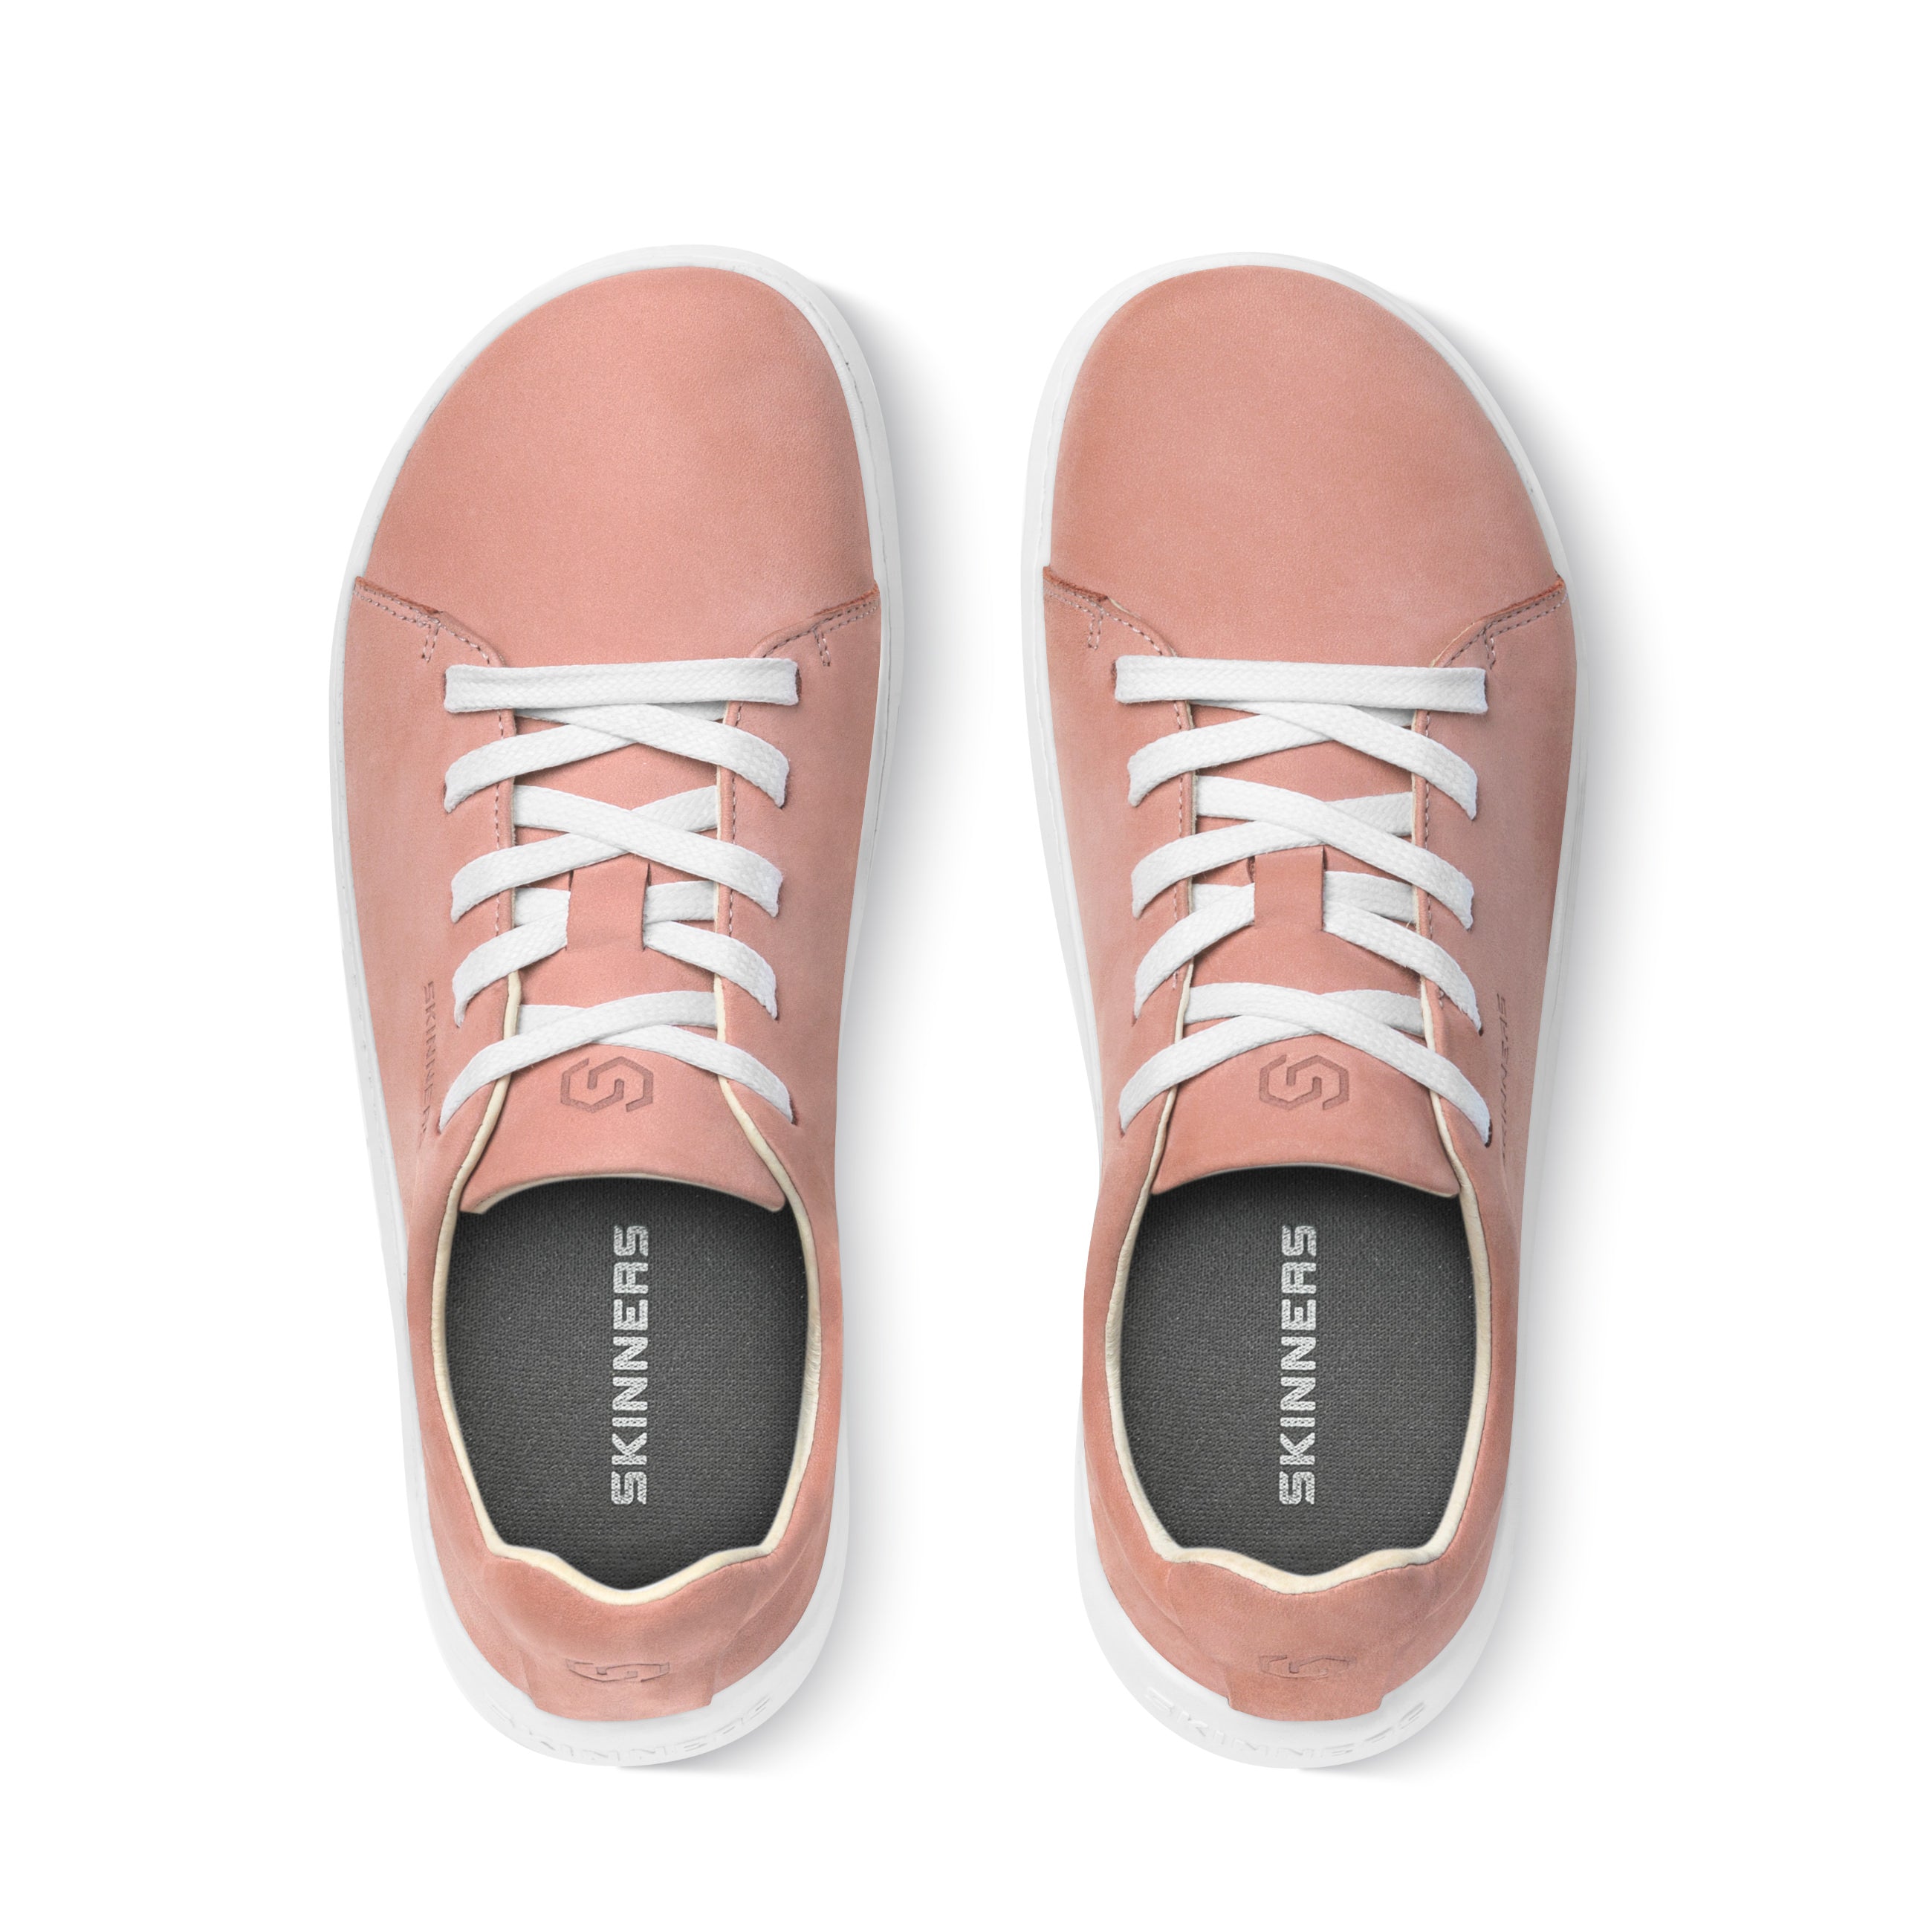 Mærkbare Walker barfods sneakers til kvinder og mænd i farven pink / white, top